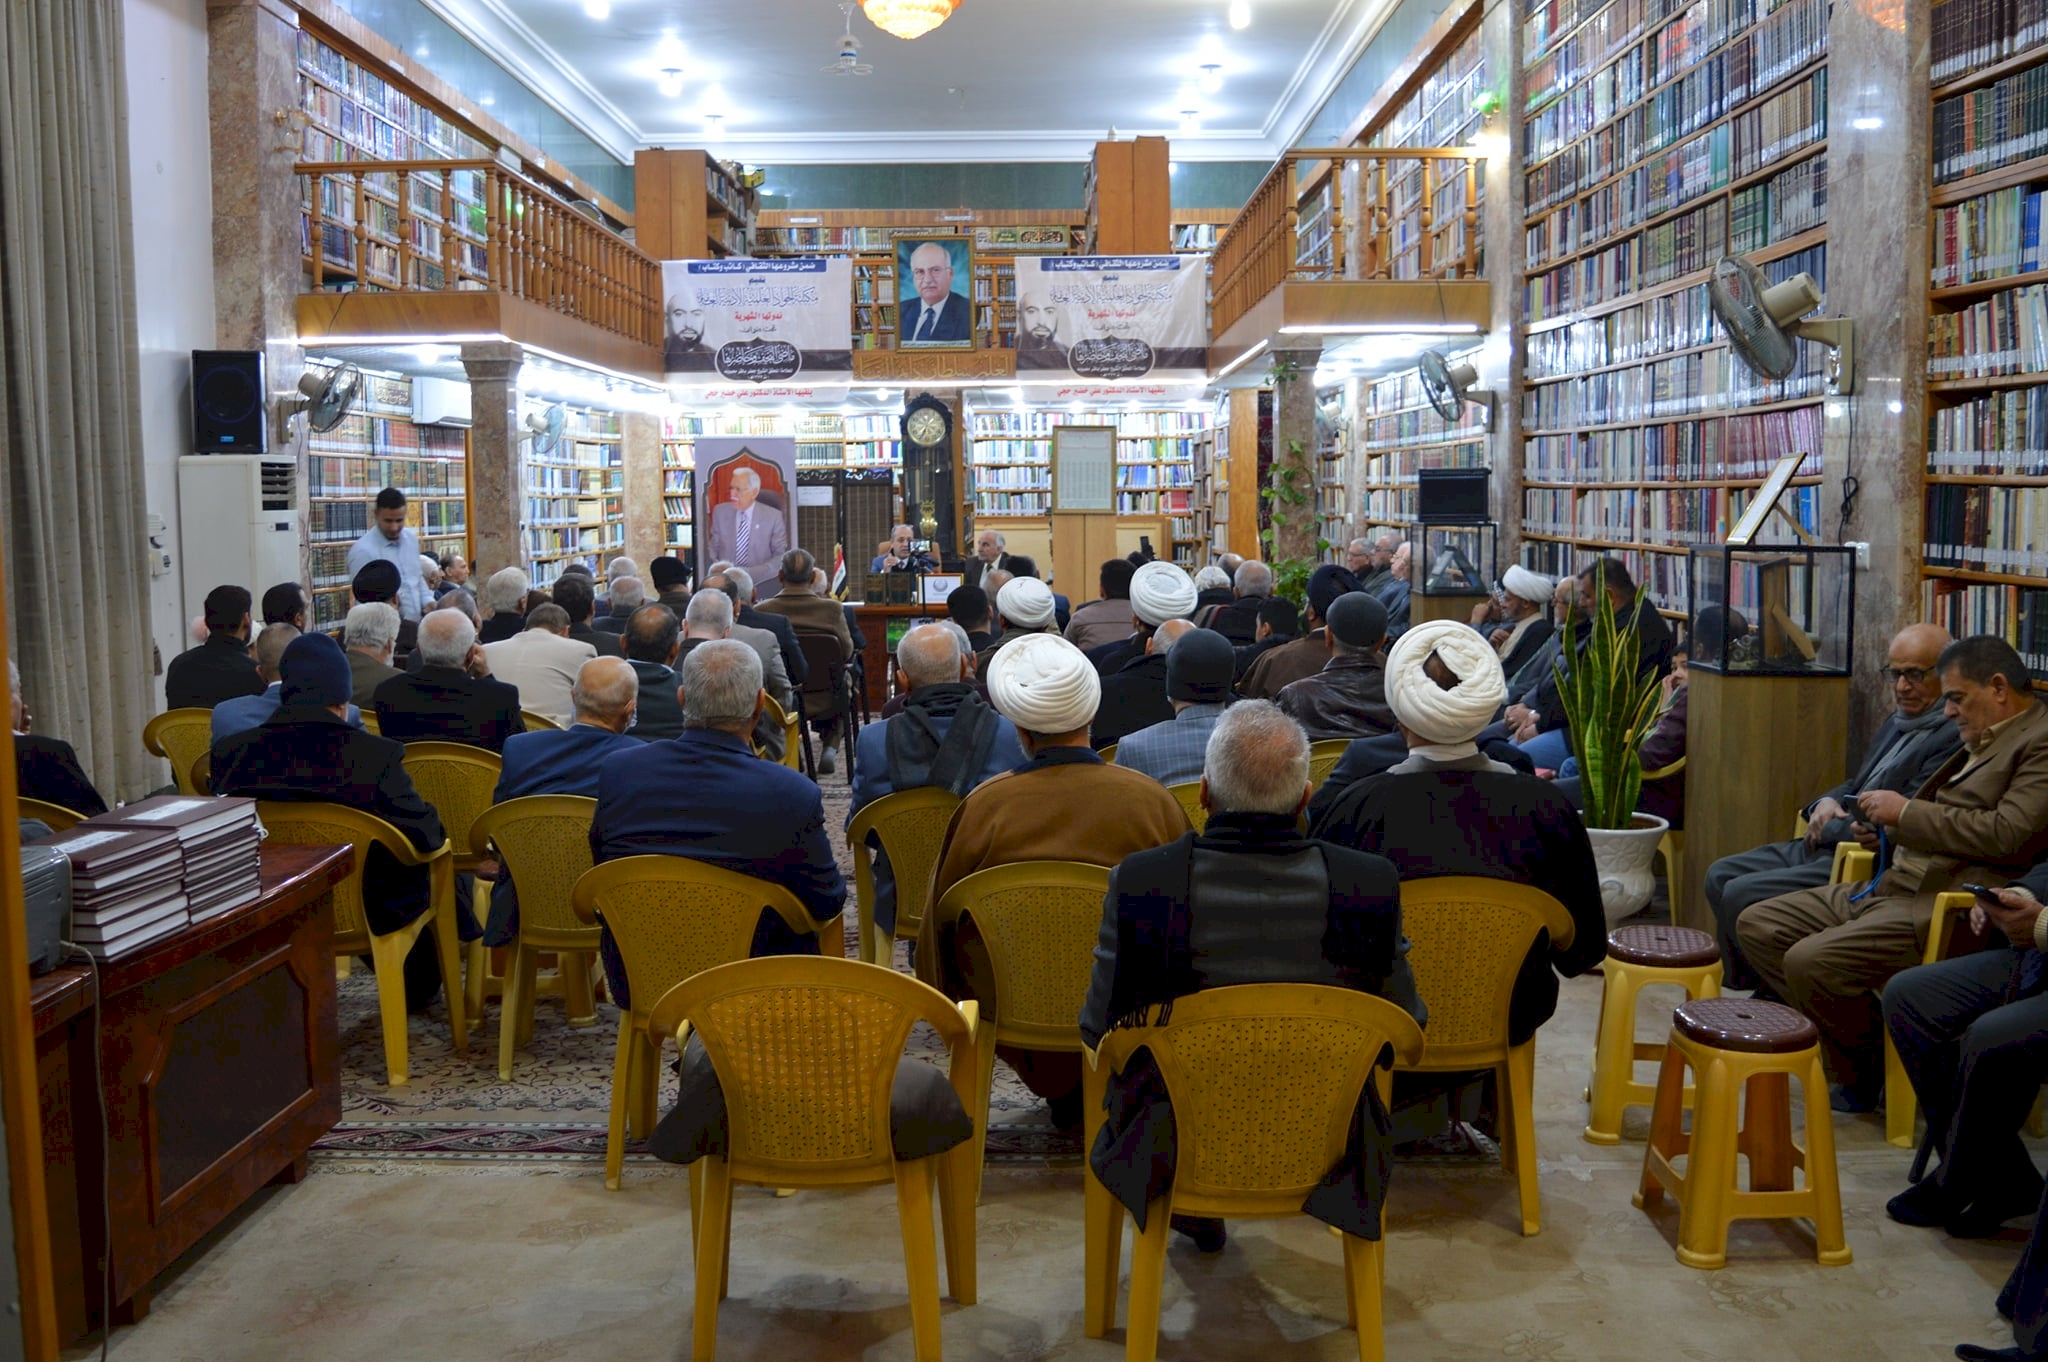 مركز تراث النجف الأشرف يحضر الندوة الثقافيّة لمكتبة الجواد (ع) العامّة